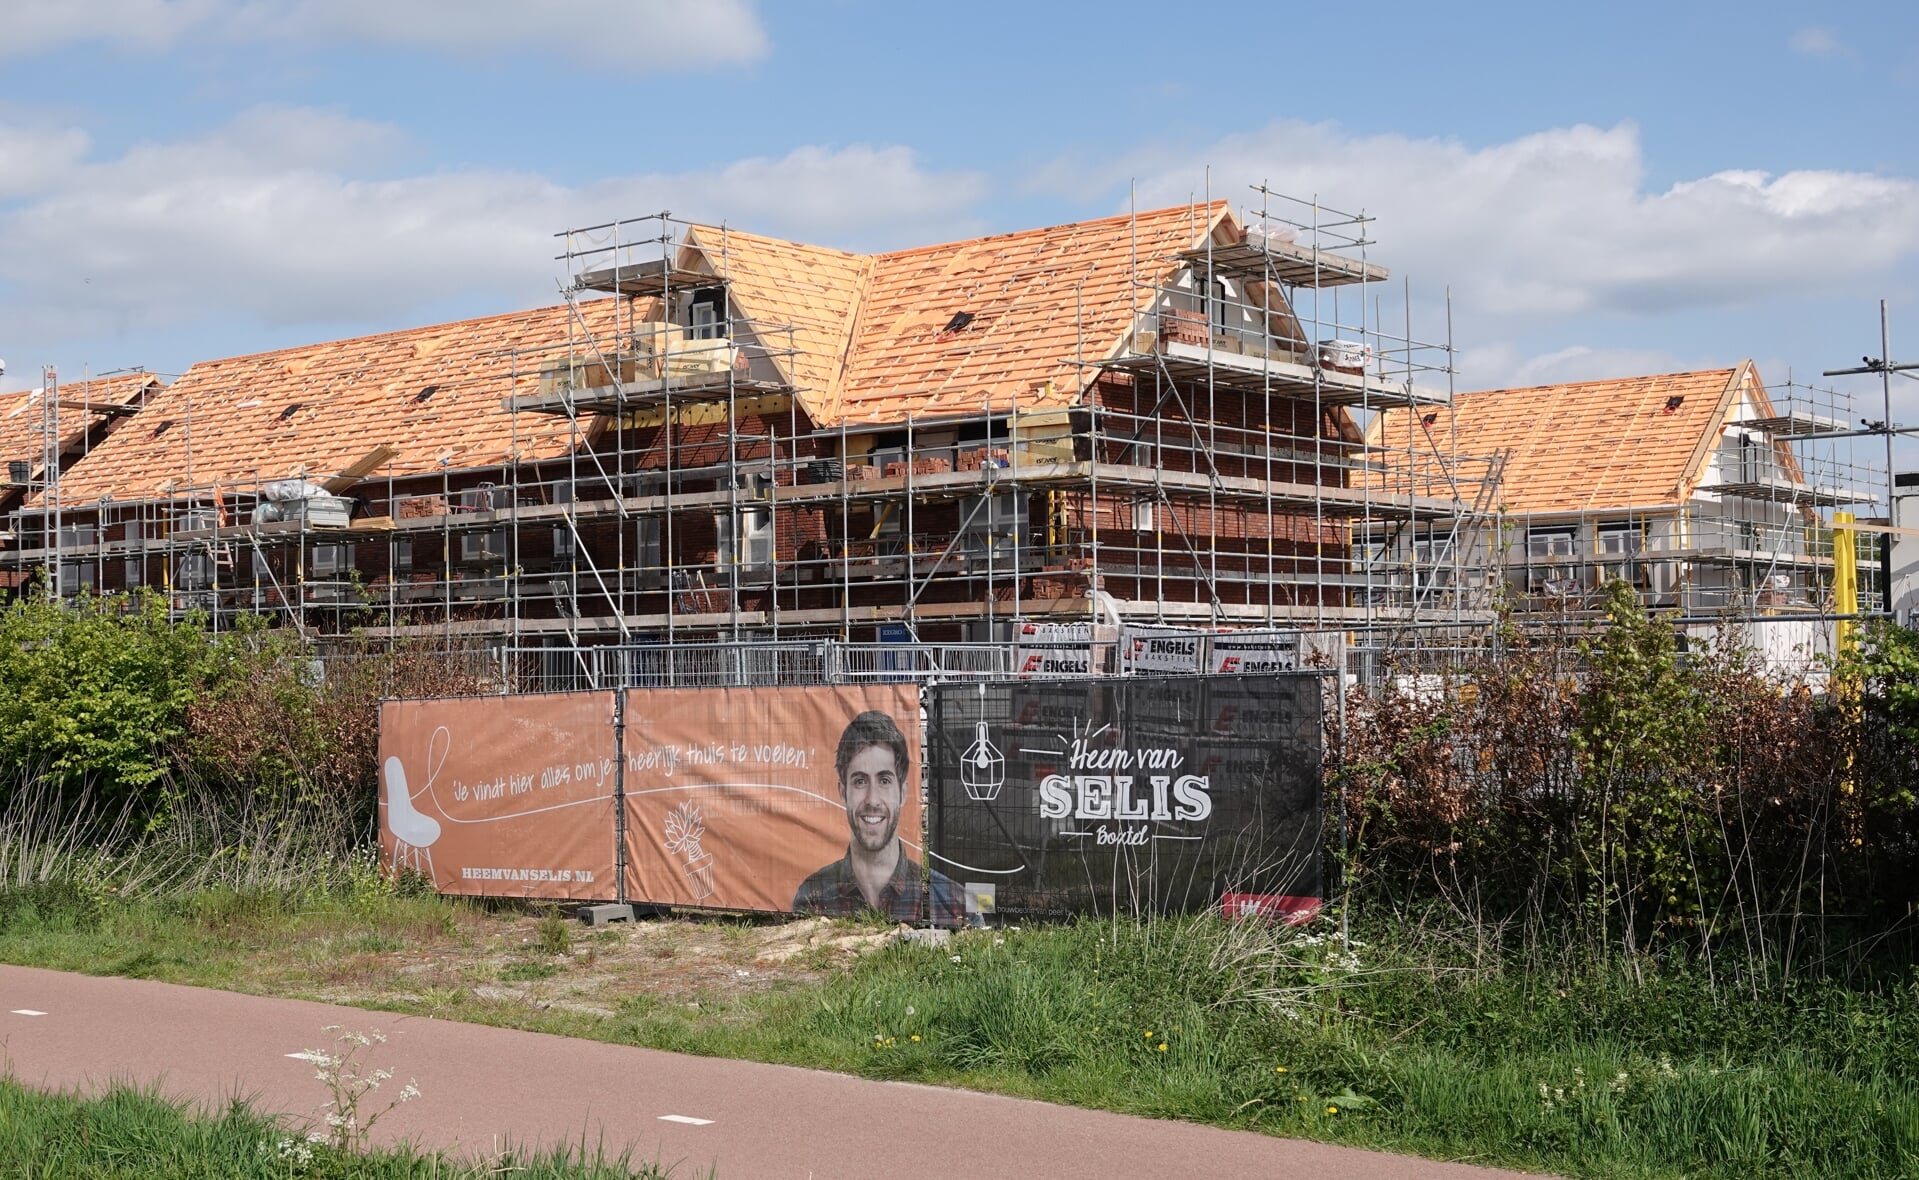 Nieuwbouwwijk Heem van Selis vordert gestaag. Deze woning verrijzen nabij sportschool 040 Fit!